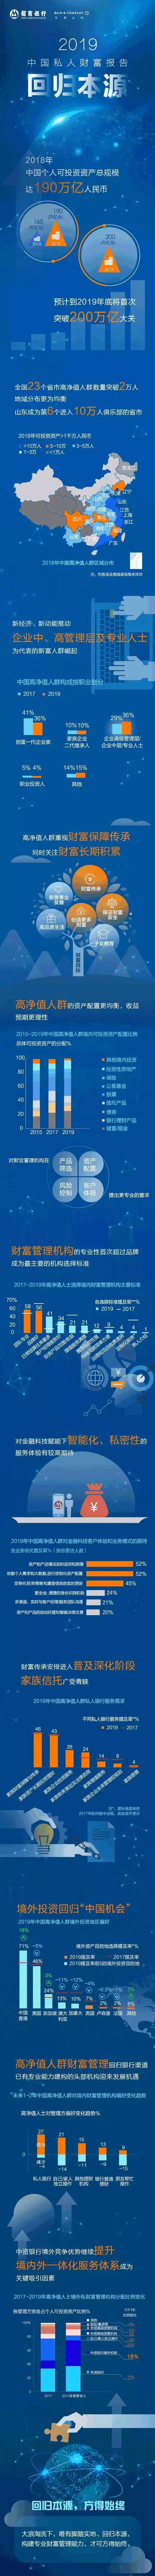 2019ayx爱游戏中国私人财富概况发布：港股竞争中财富传承意识空前增强